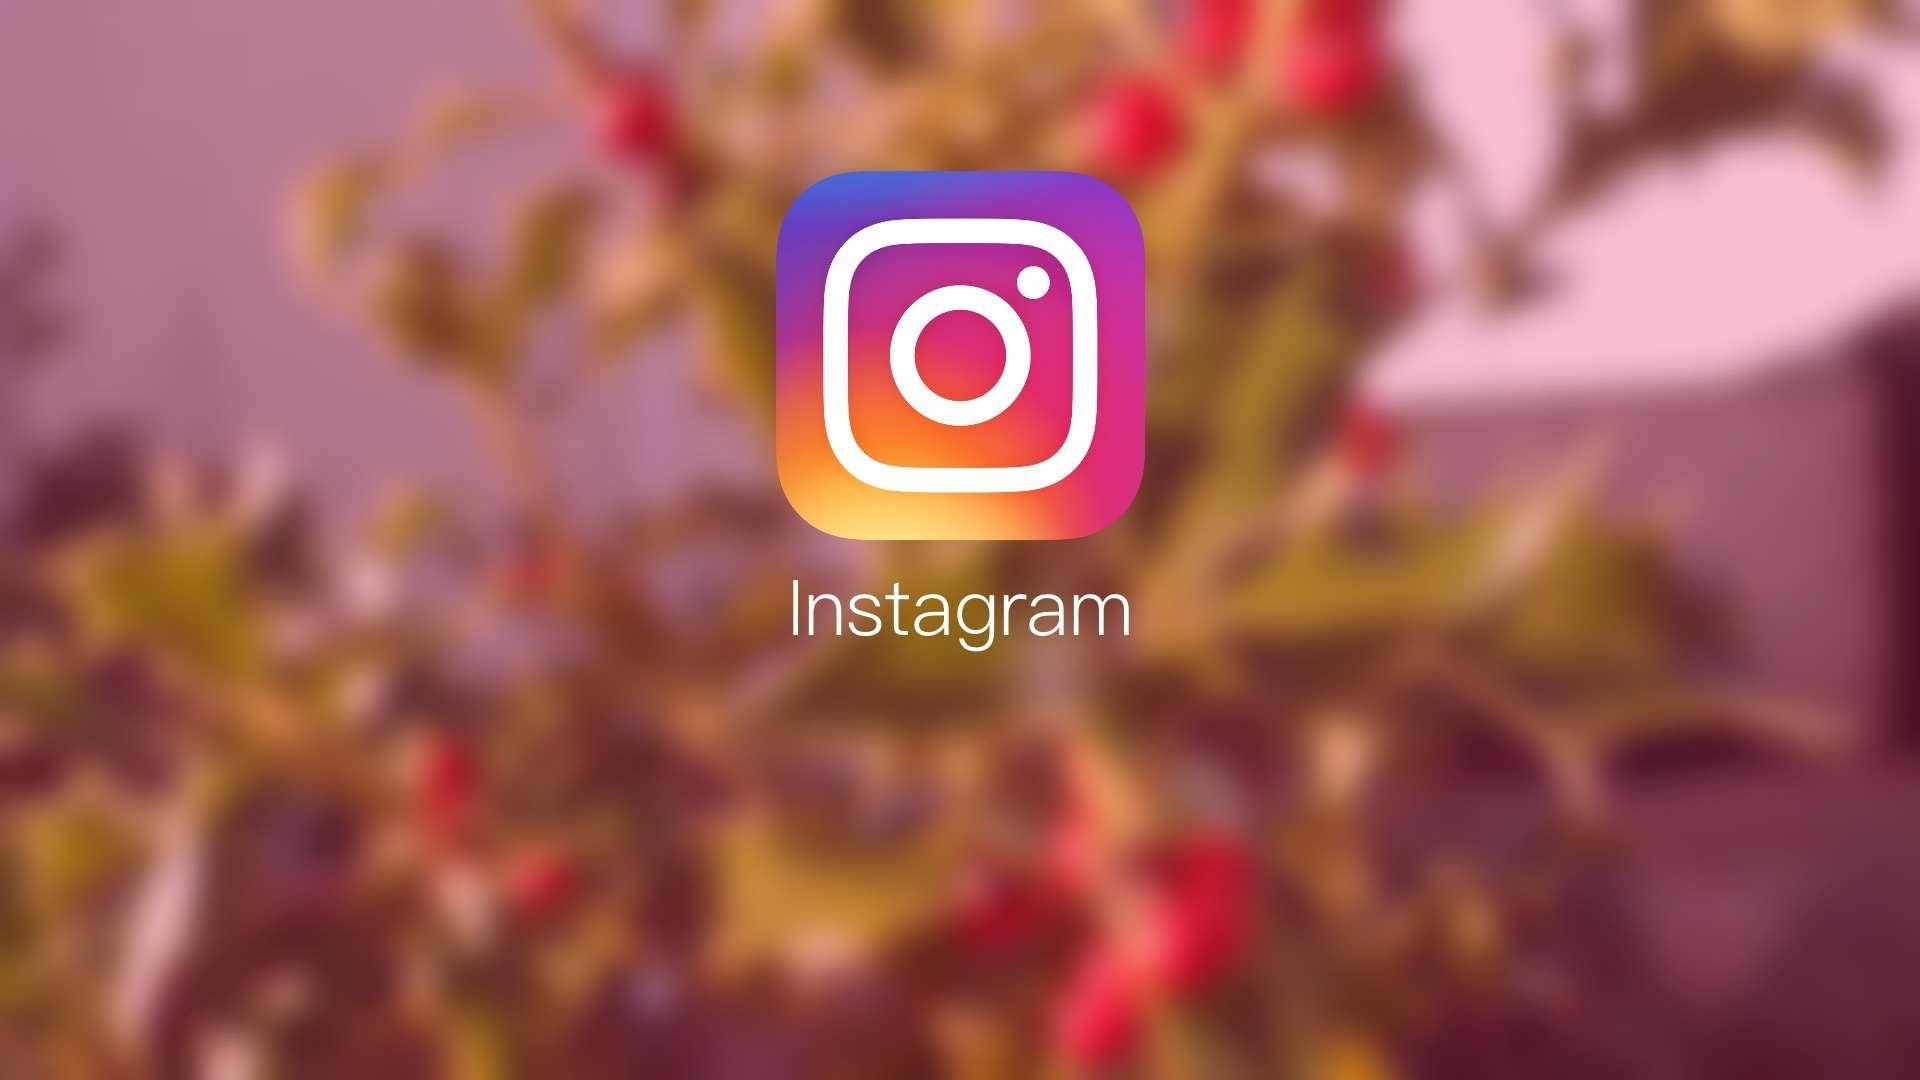 Aesthetic Instagram Logo Wallpaper